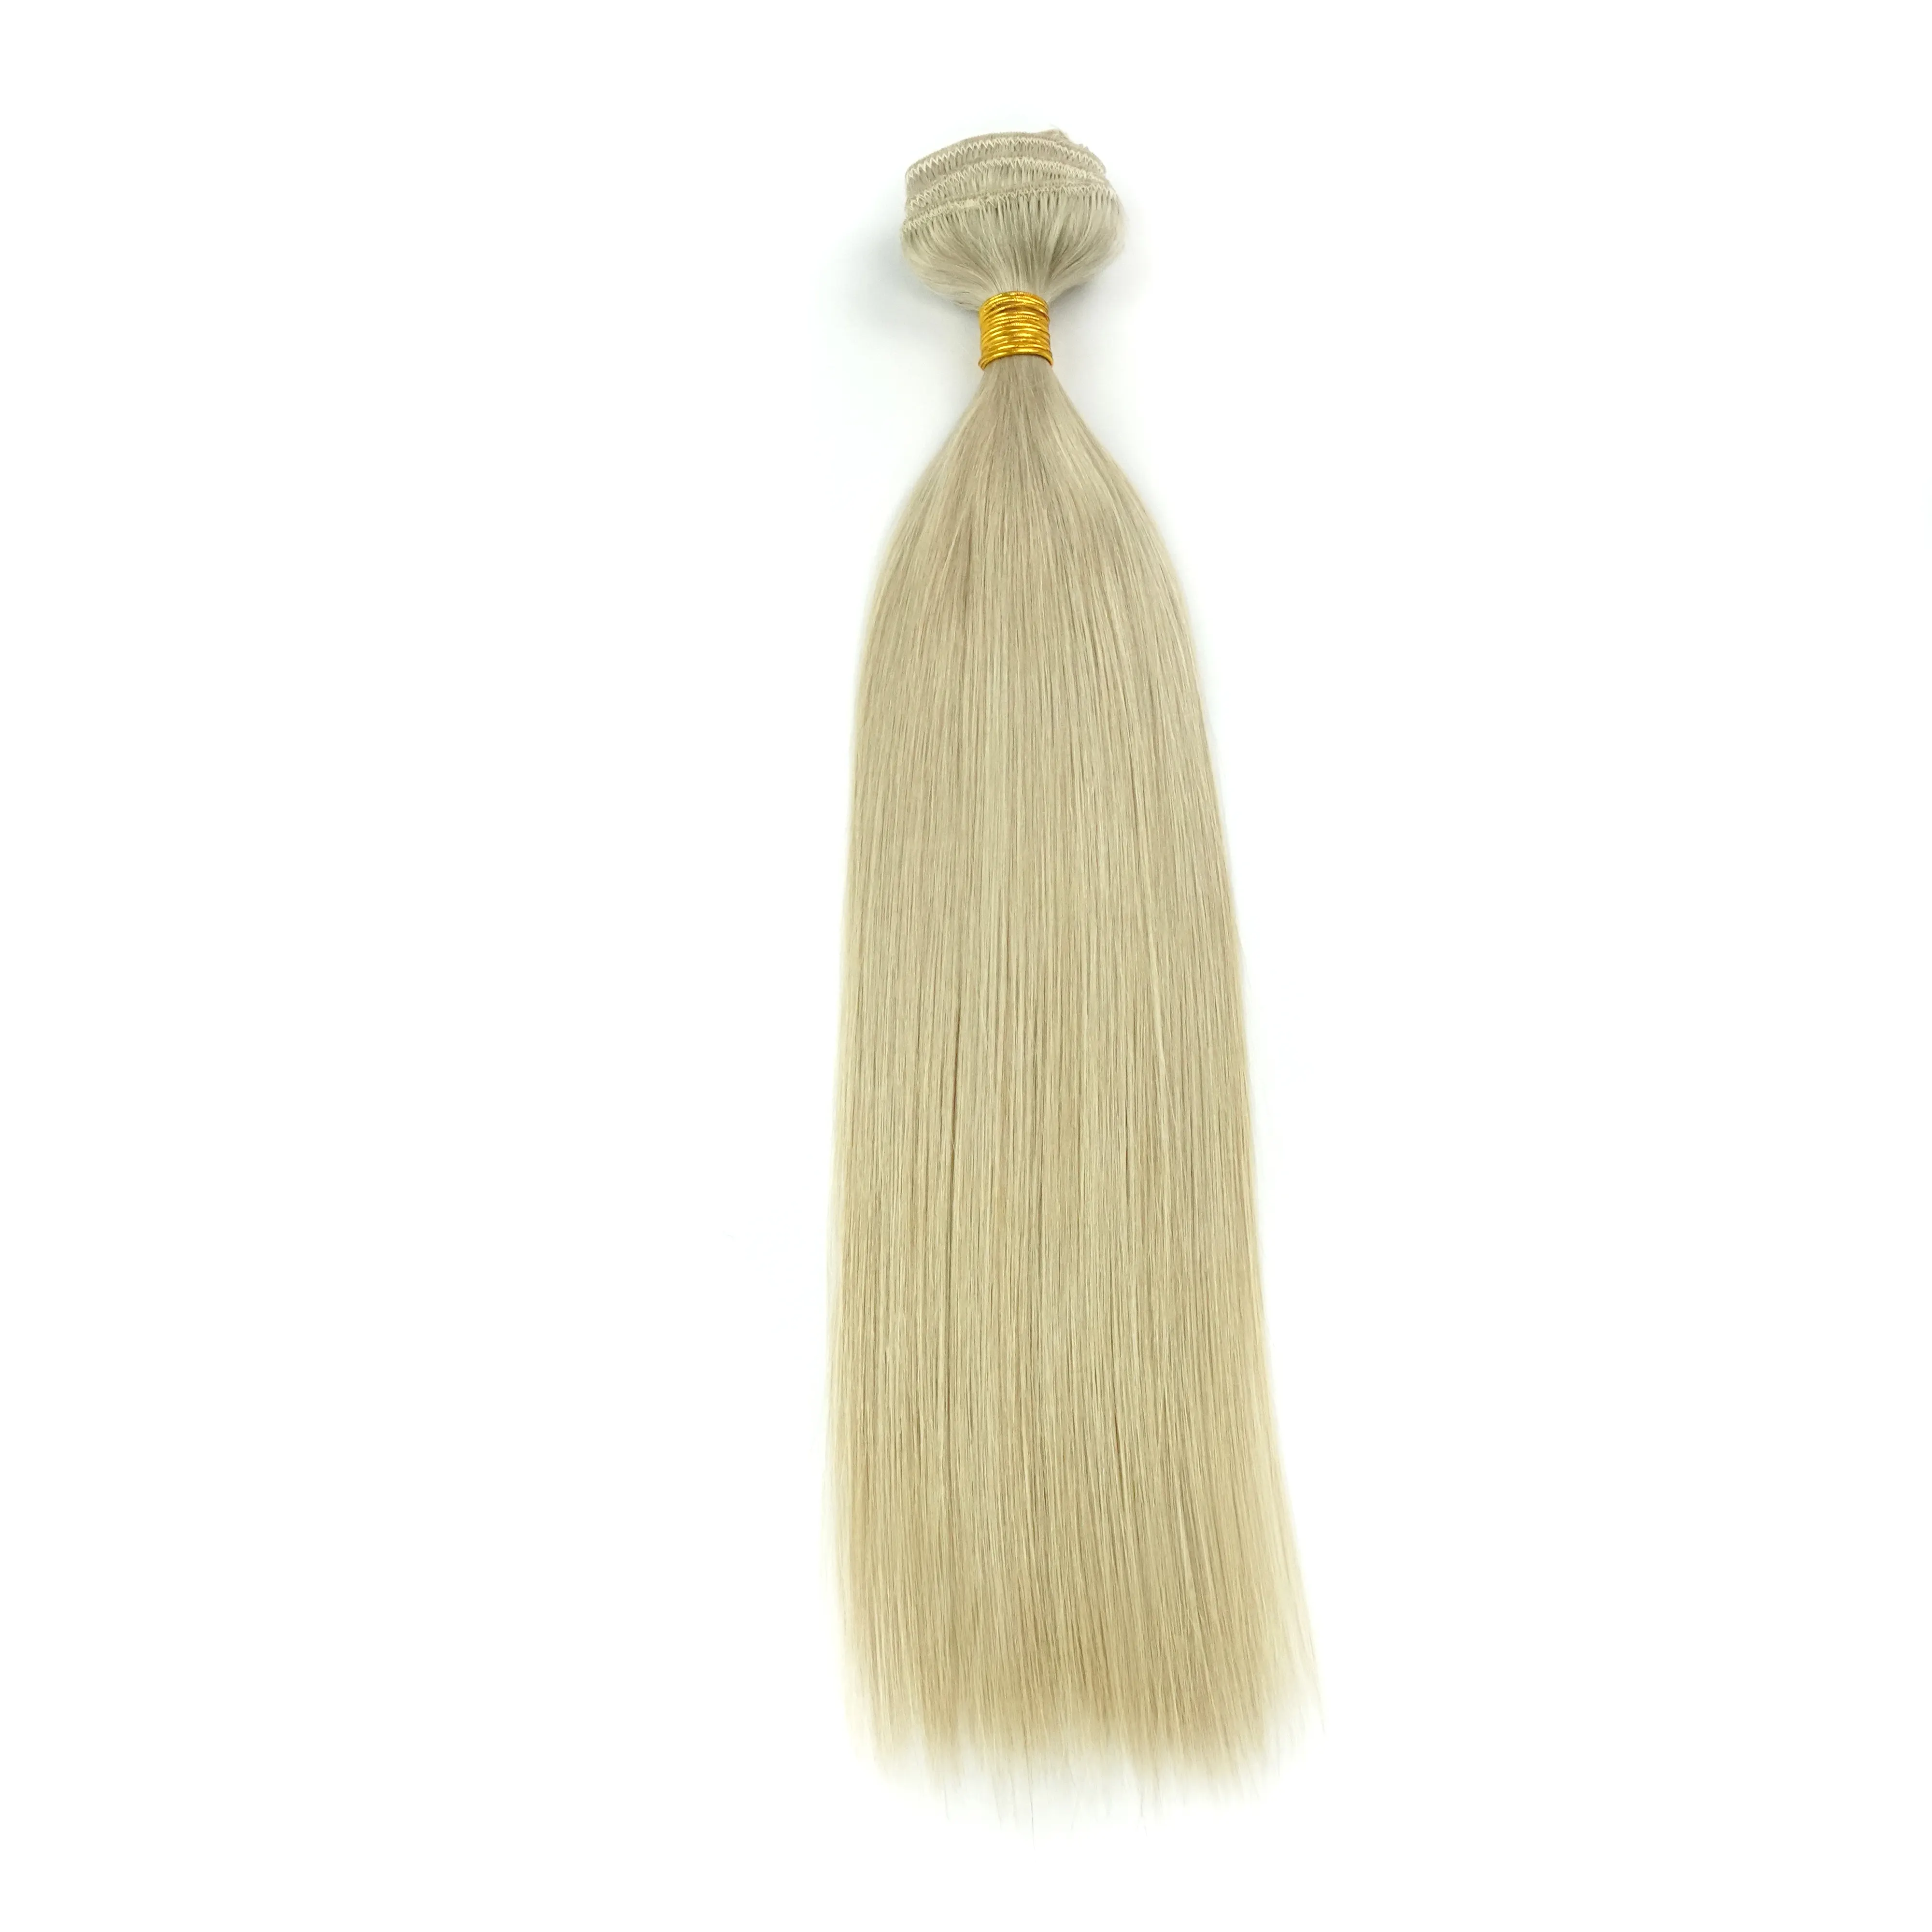 Malezya insan saçı malezya kuala lumpur sincap gri insan saçı saç maşası ile fırın pensetler ücretsiz avrupa düz